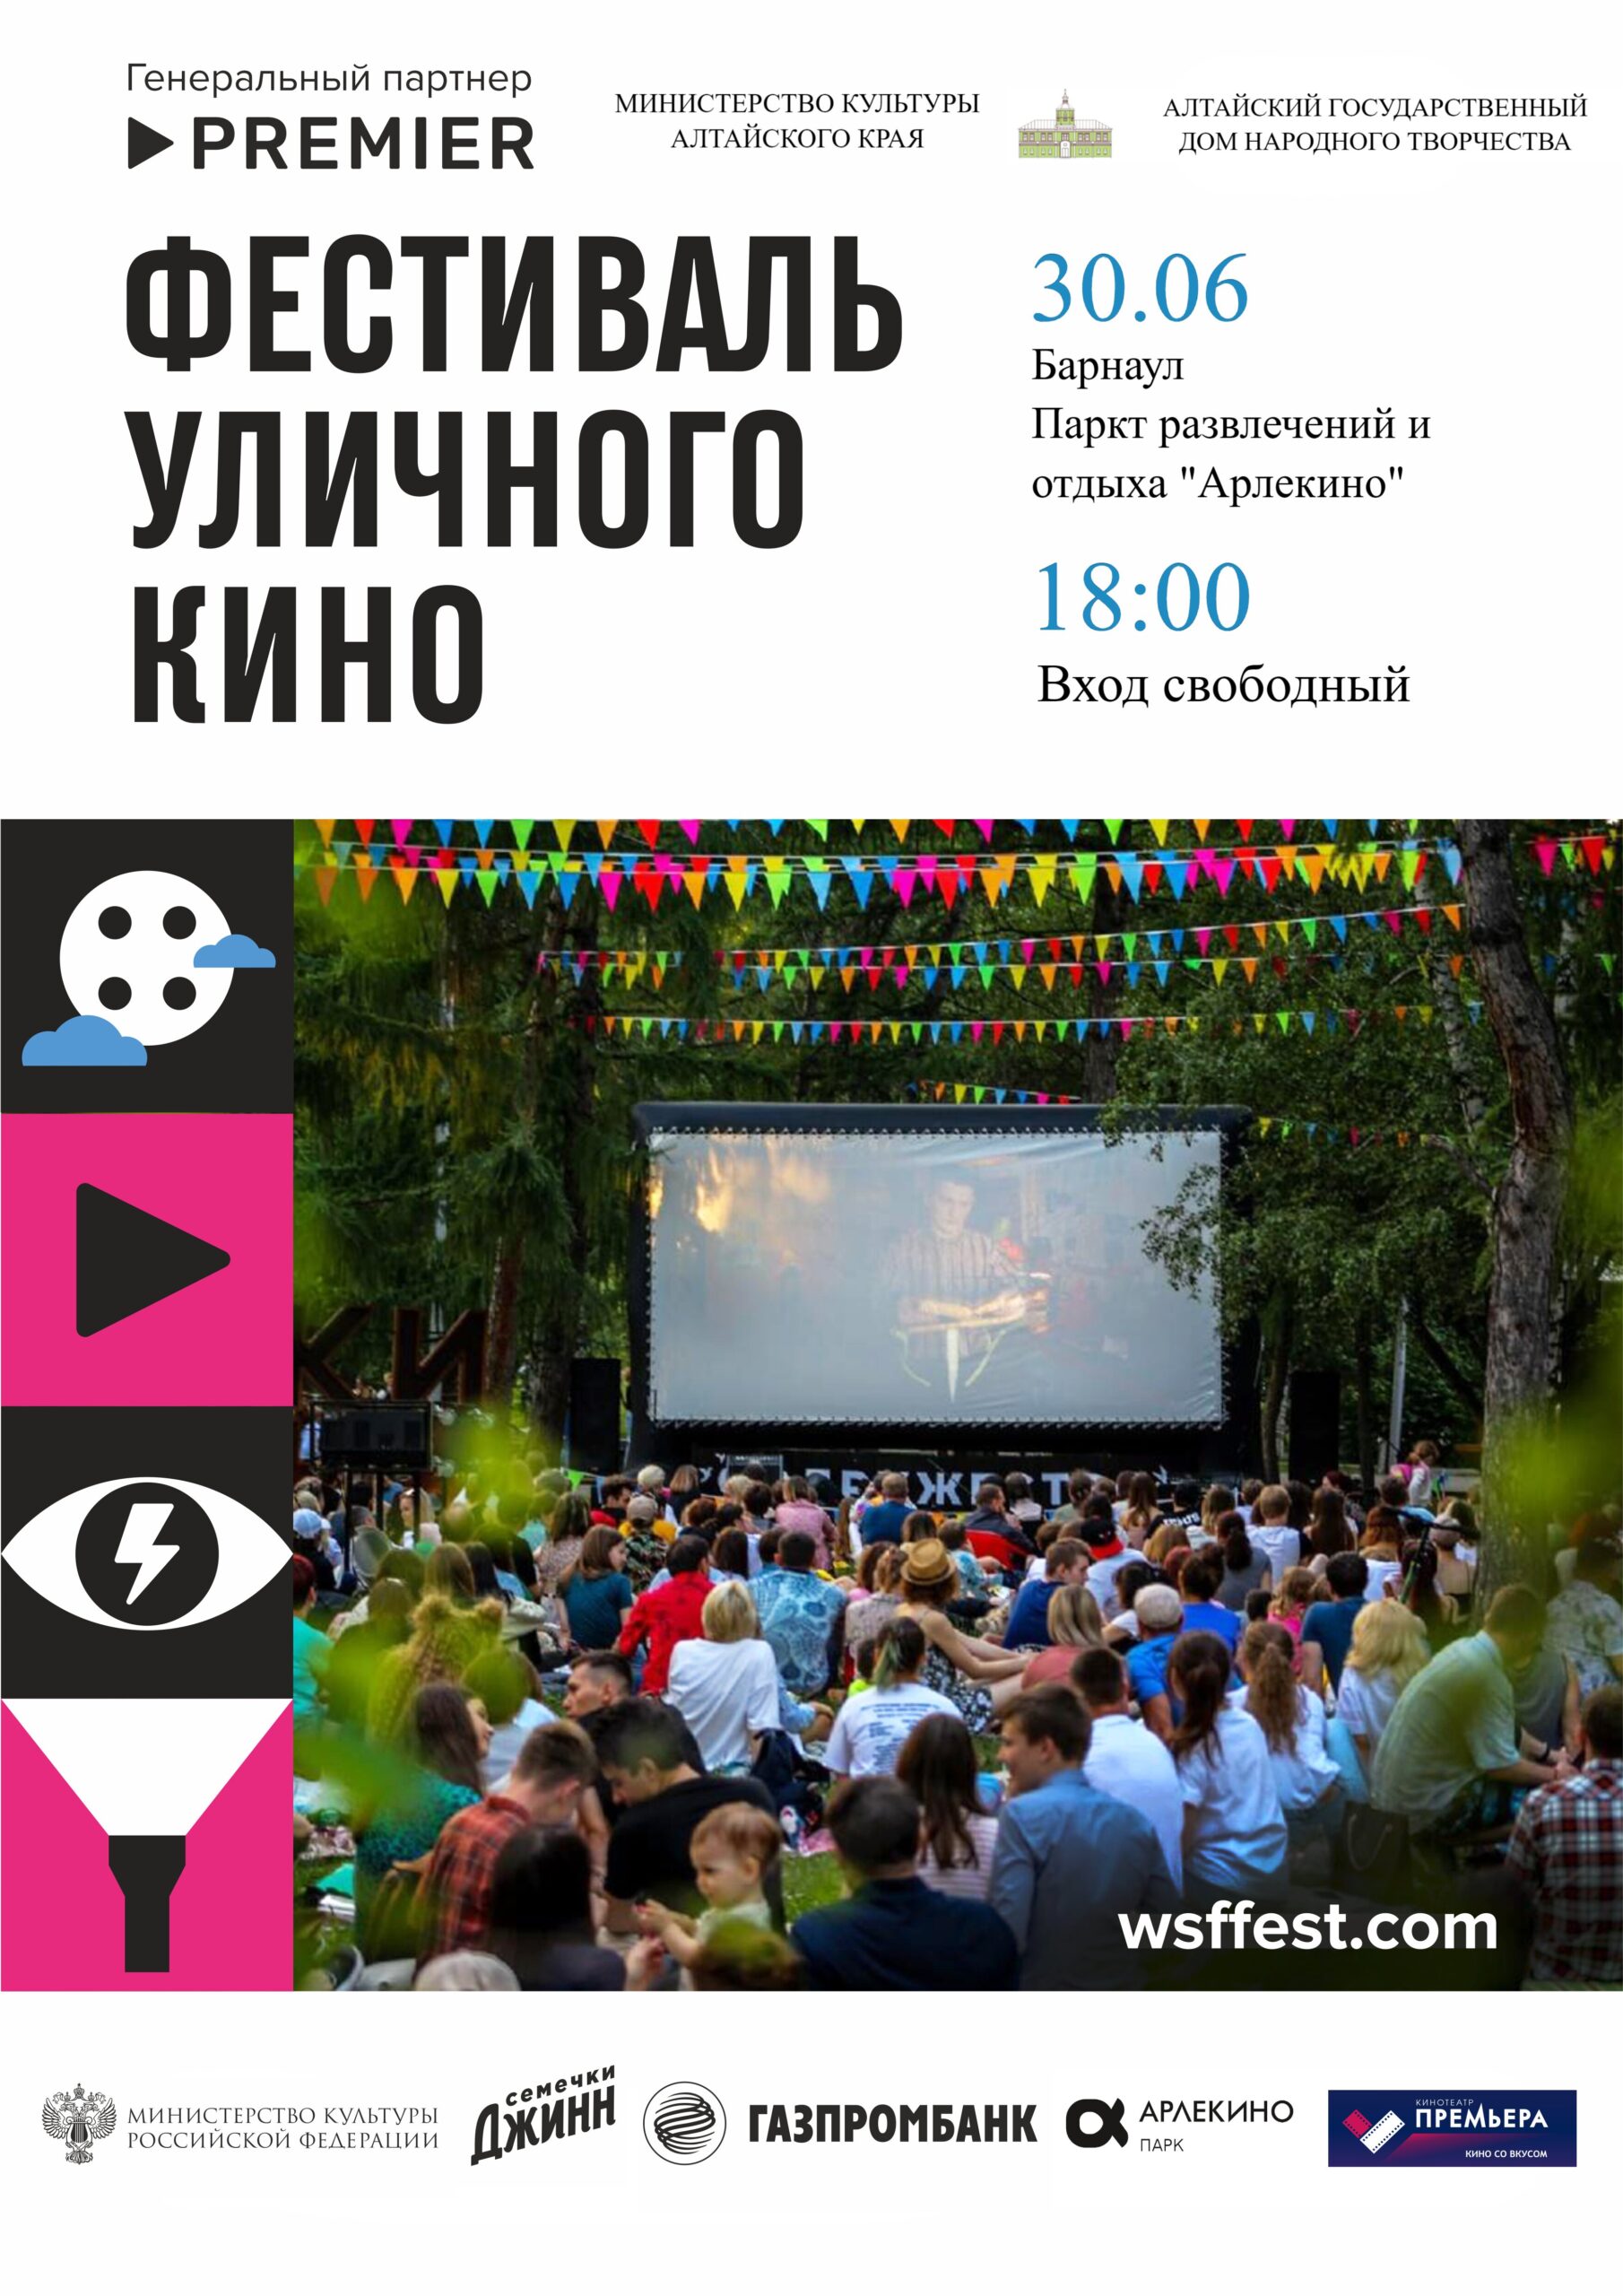 Фестиваль уличного кино прошёл в Барнауле